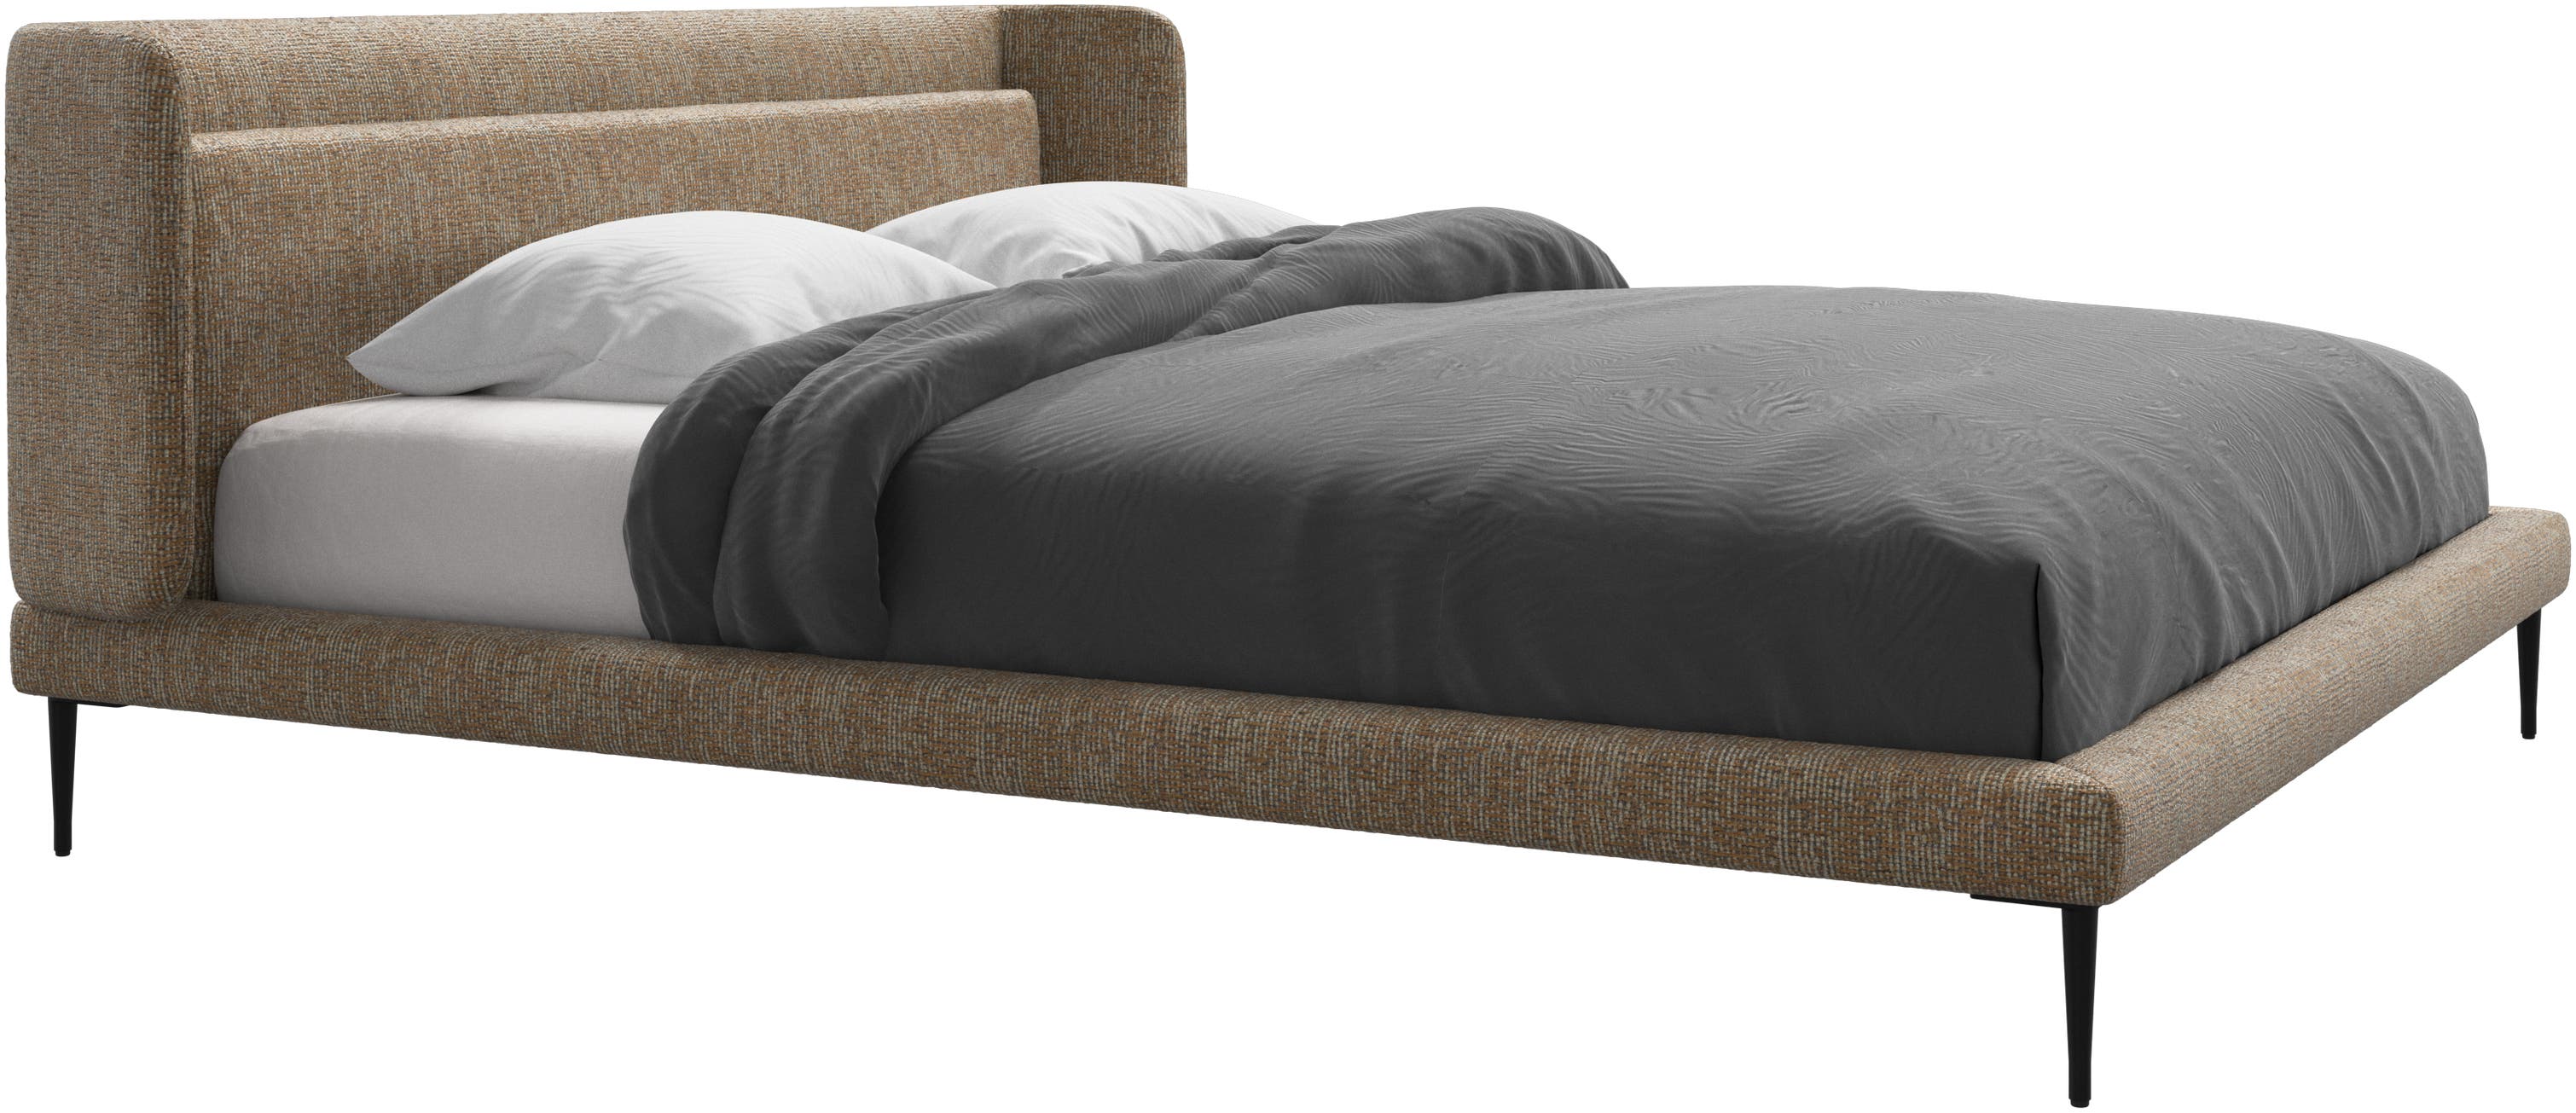 Austin bed, excl. mattress